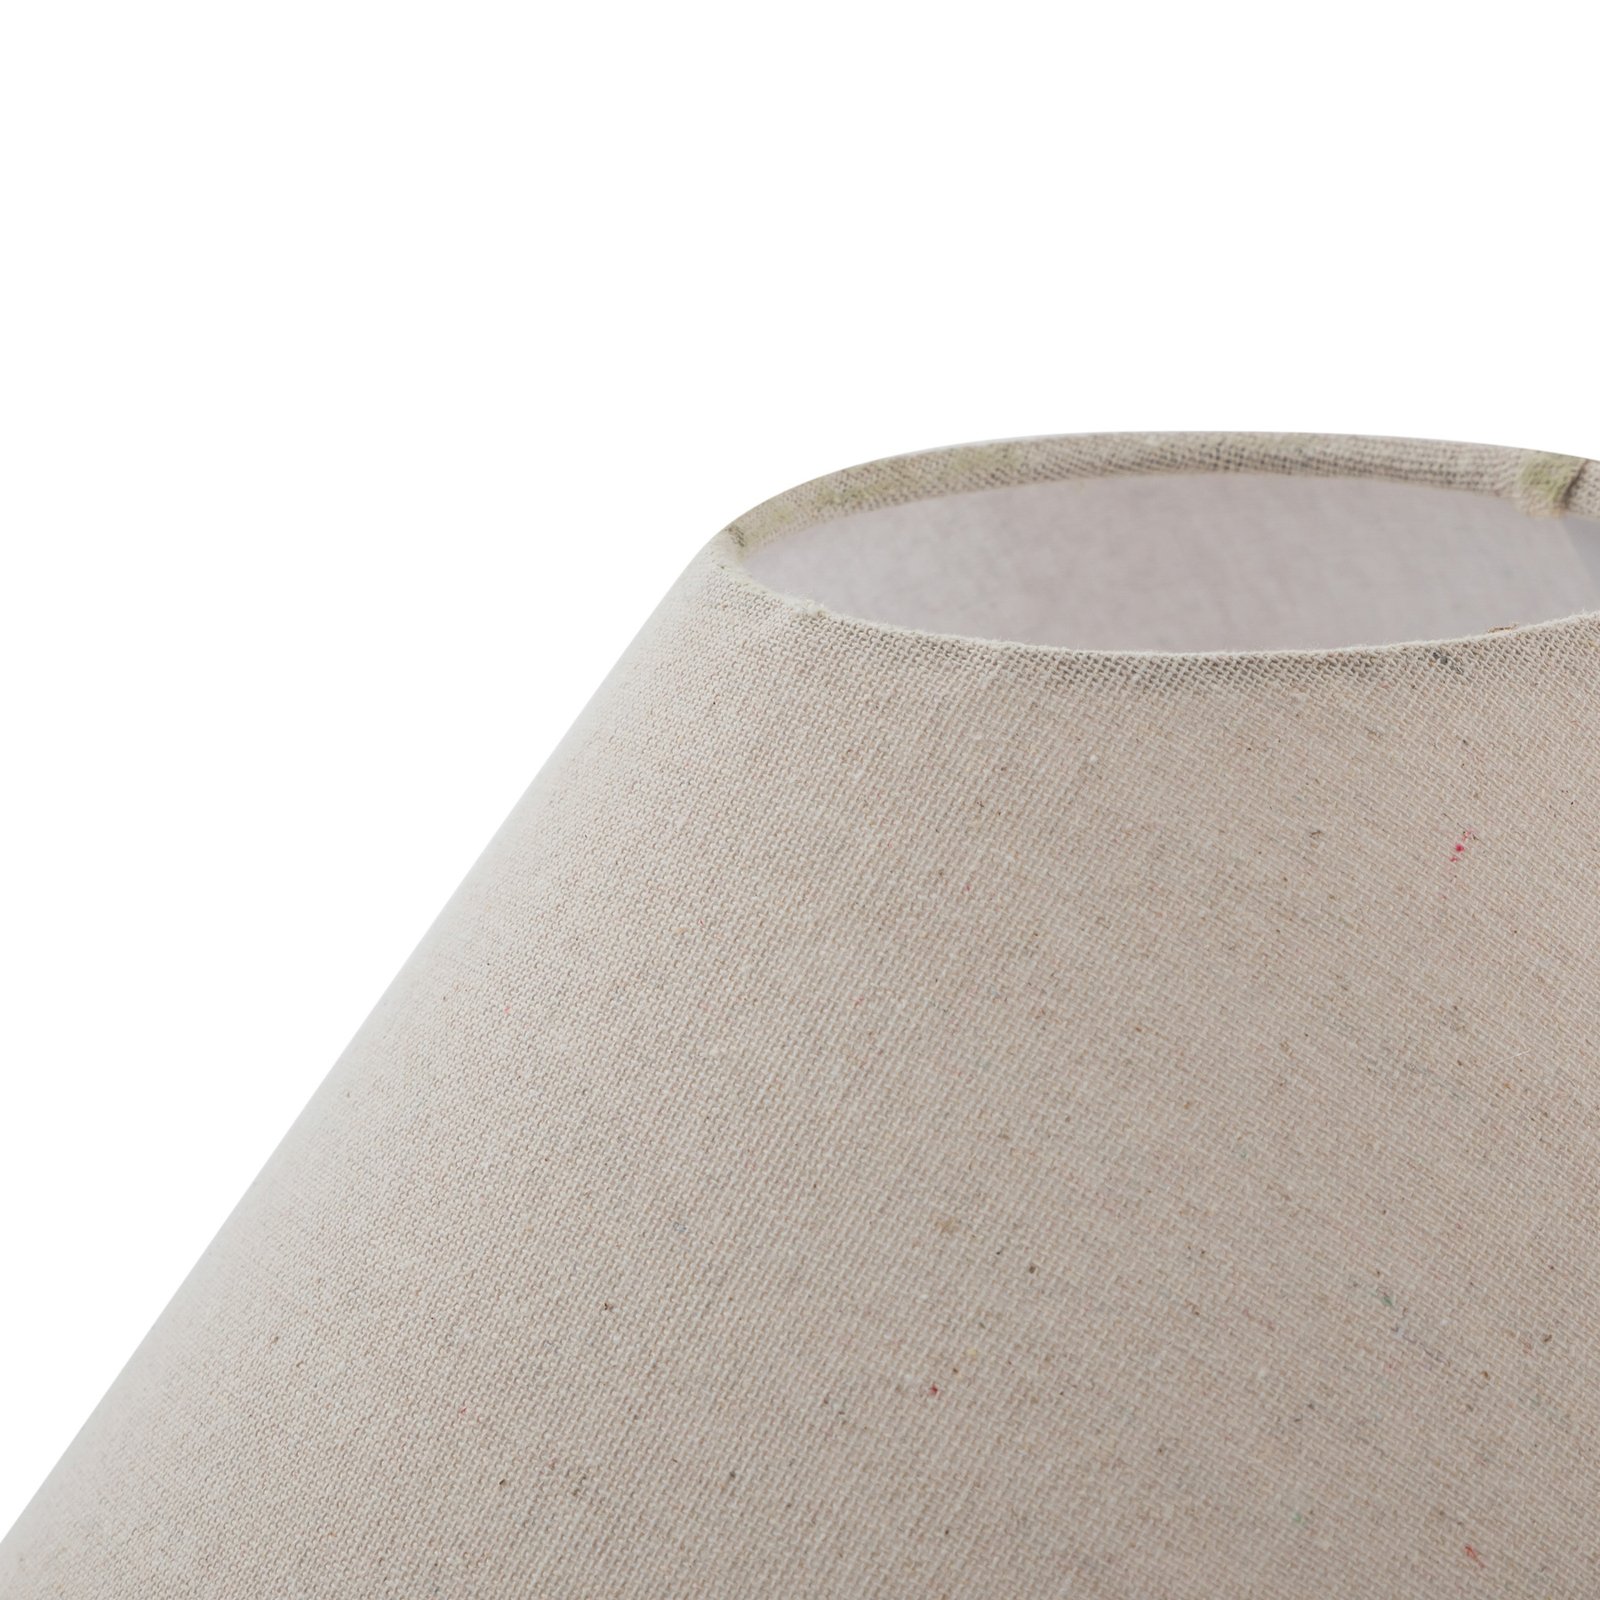 Lucande galda lampa Thalorin, augstums 39 cm, keramika